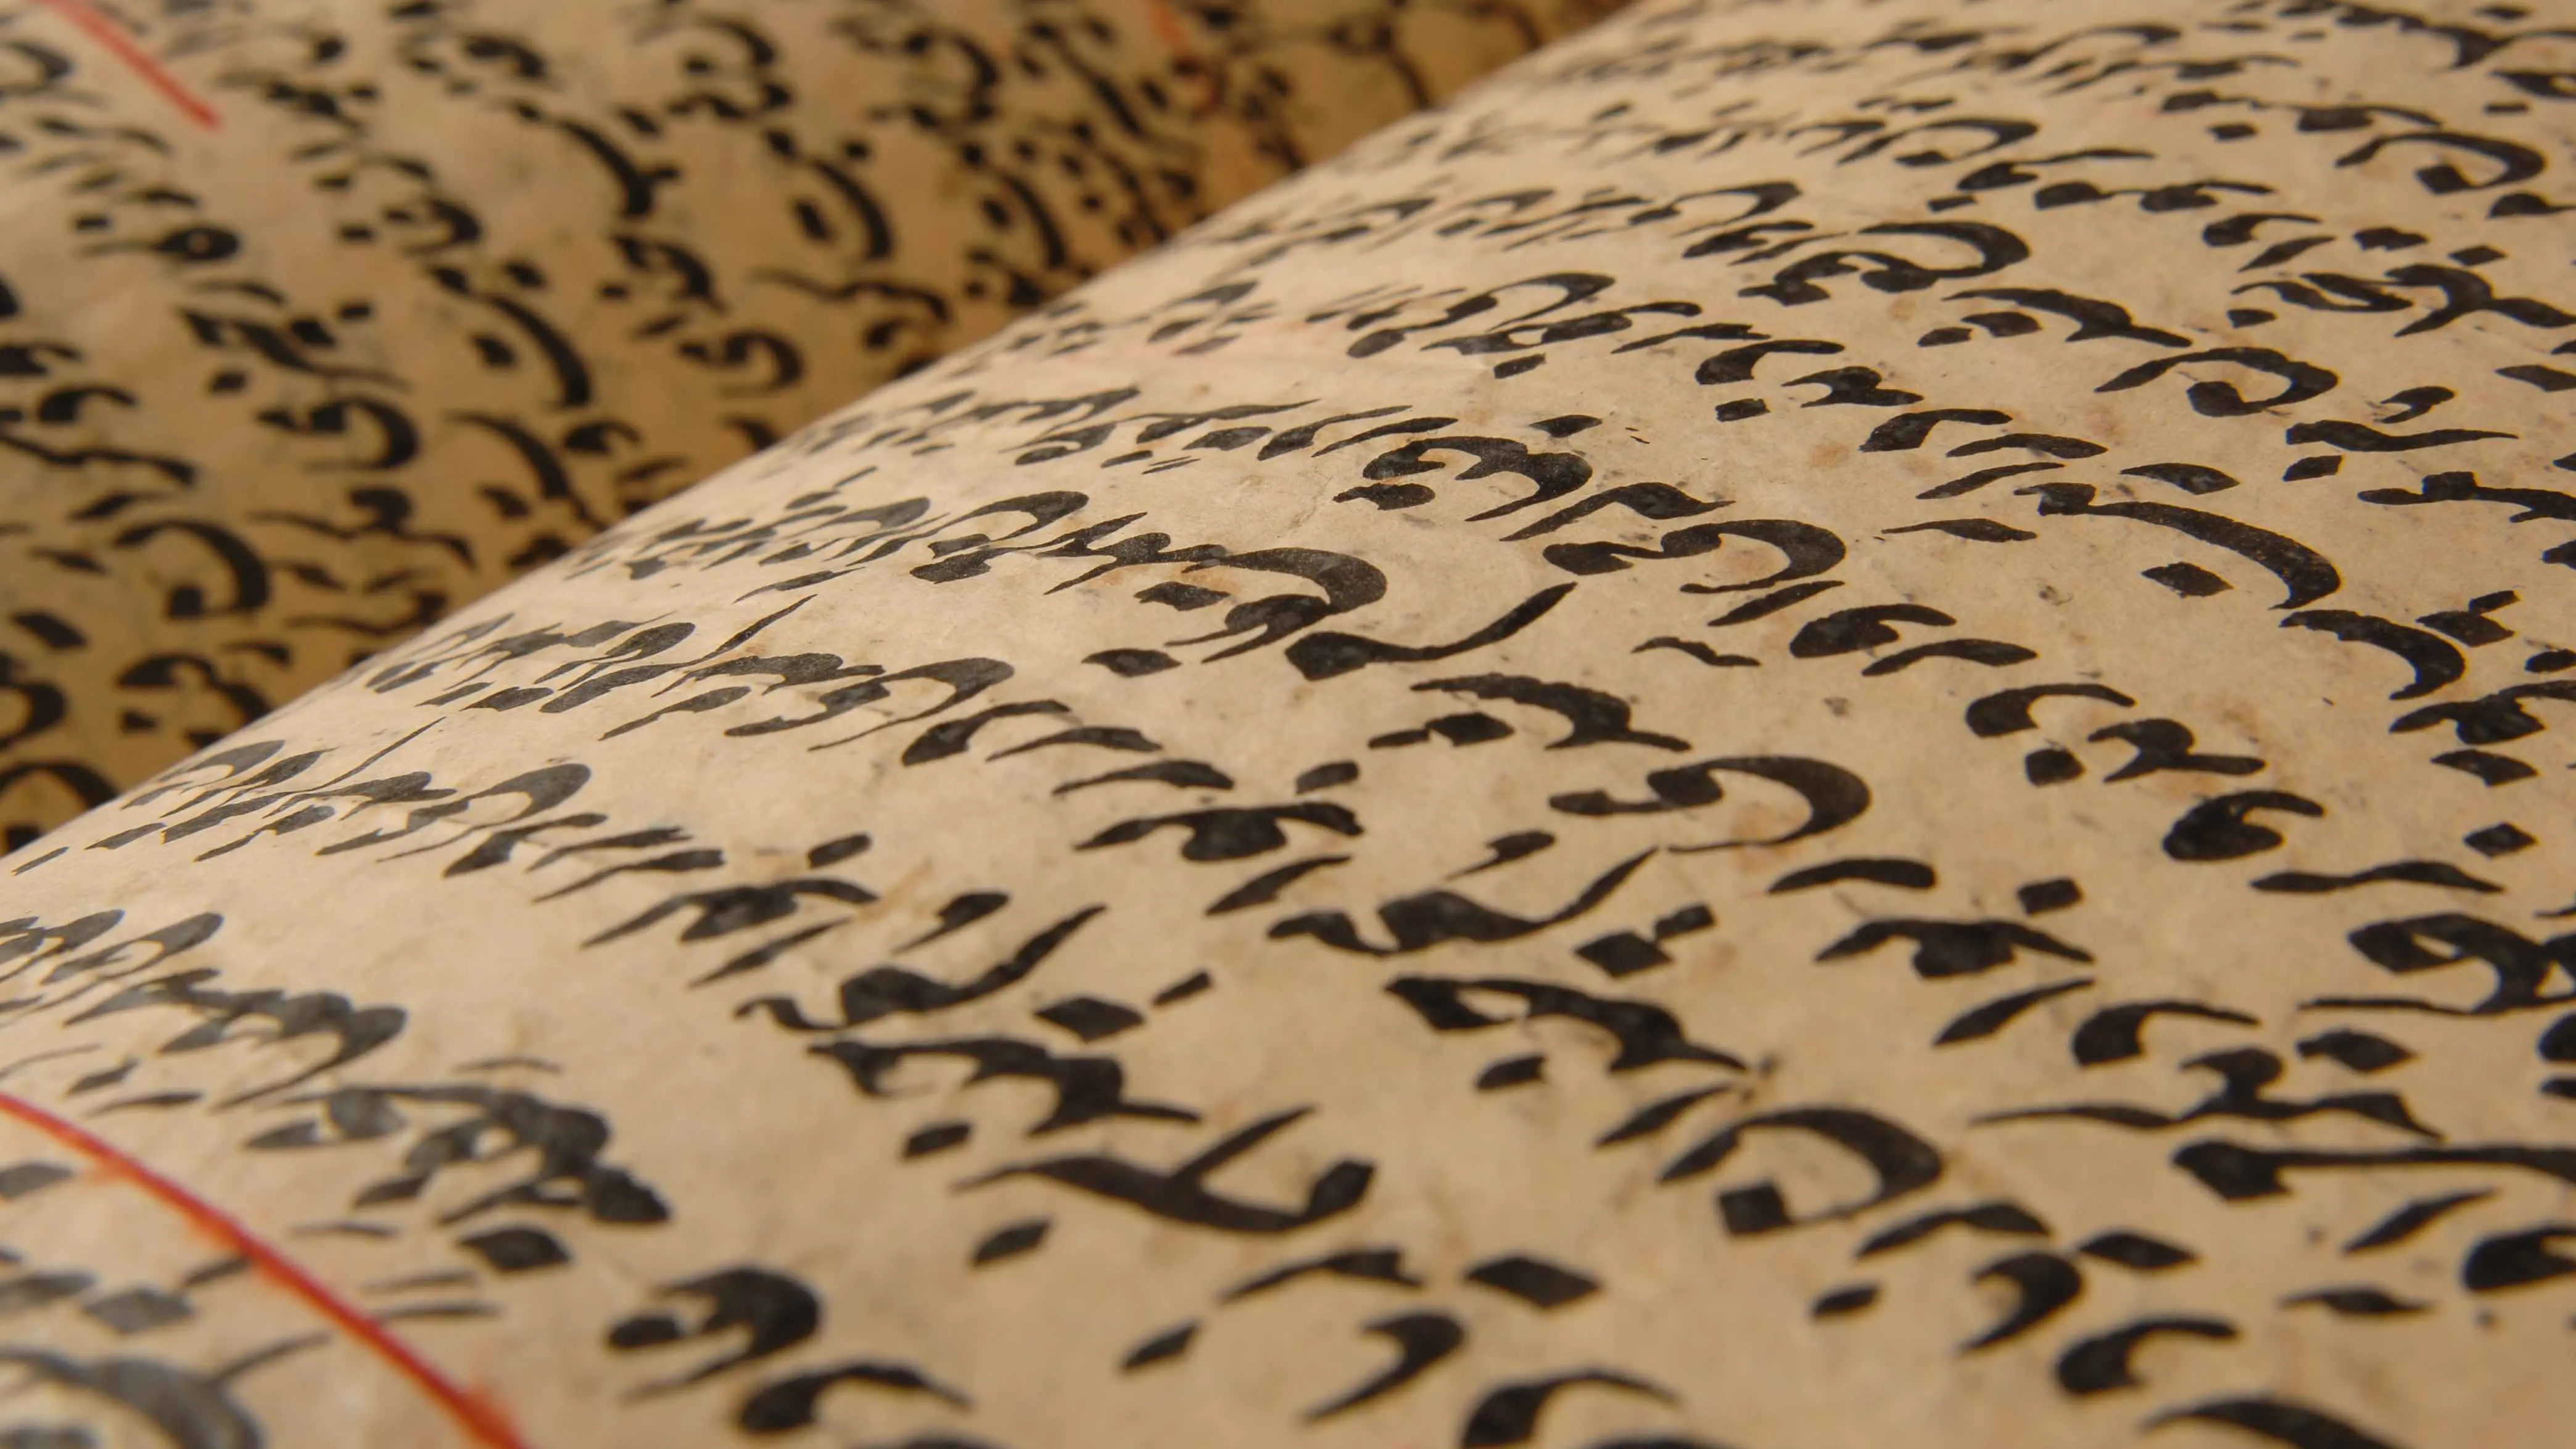 باحث يكشف لـ"إرم نيوز" إهمال آلاف المخطوطات العربية النادرة في الهند